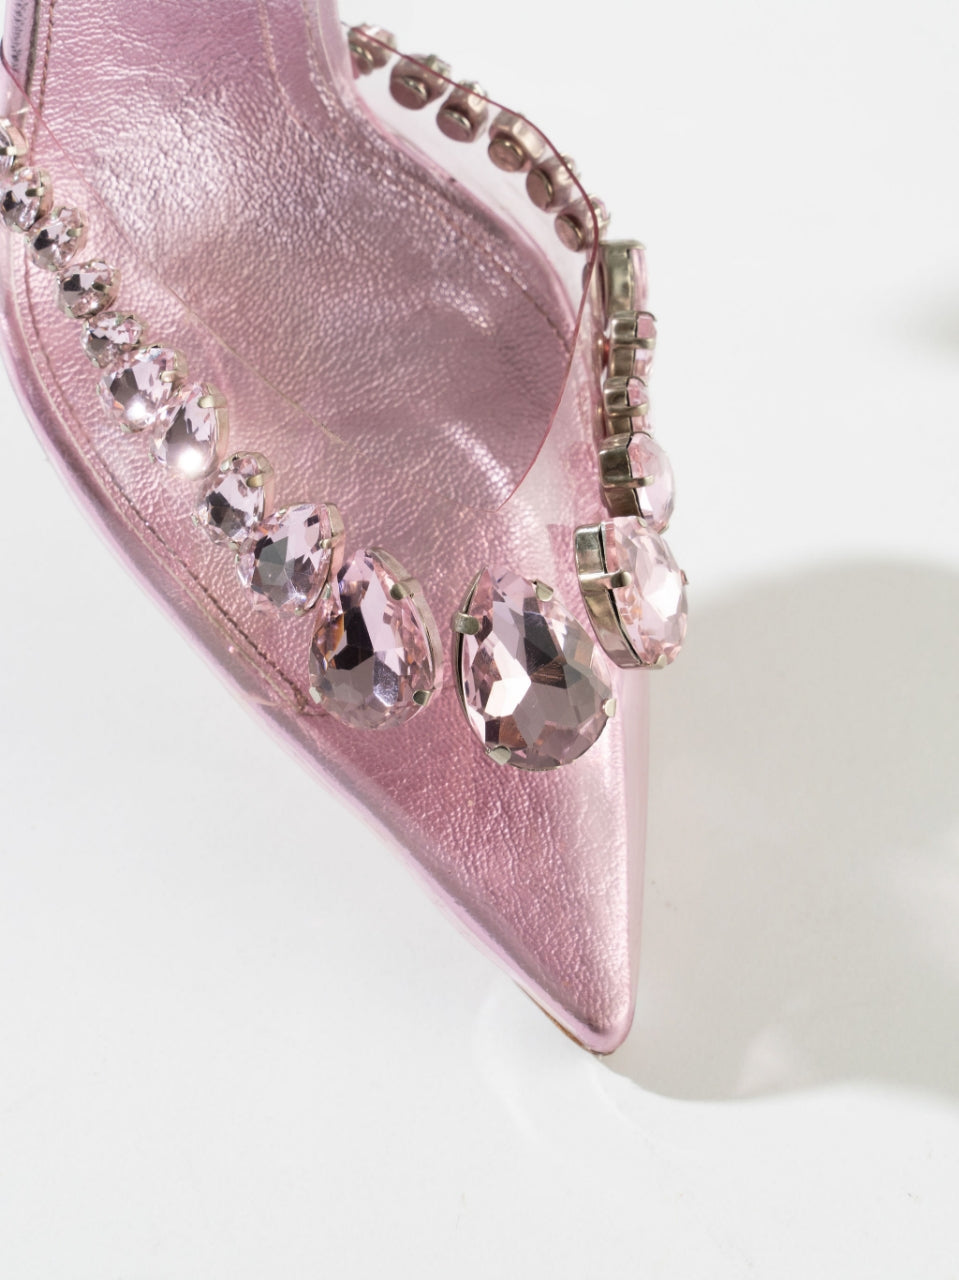 Wonderland Dimond Crystal Embellished Strappy 80MM Sandals - Baby Pink